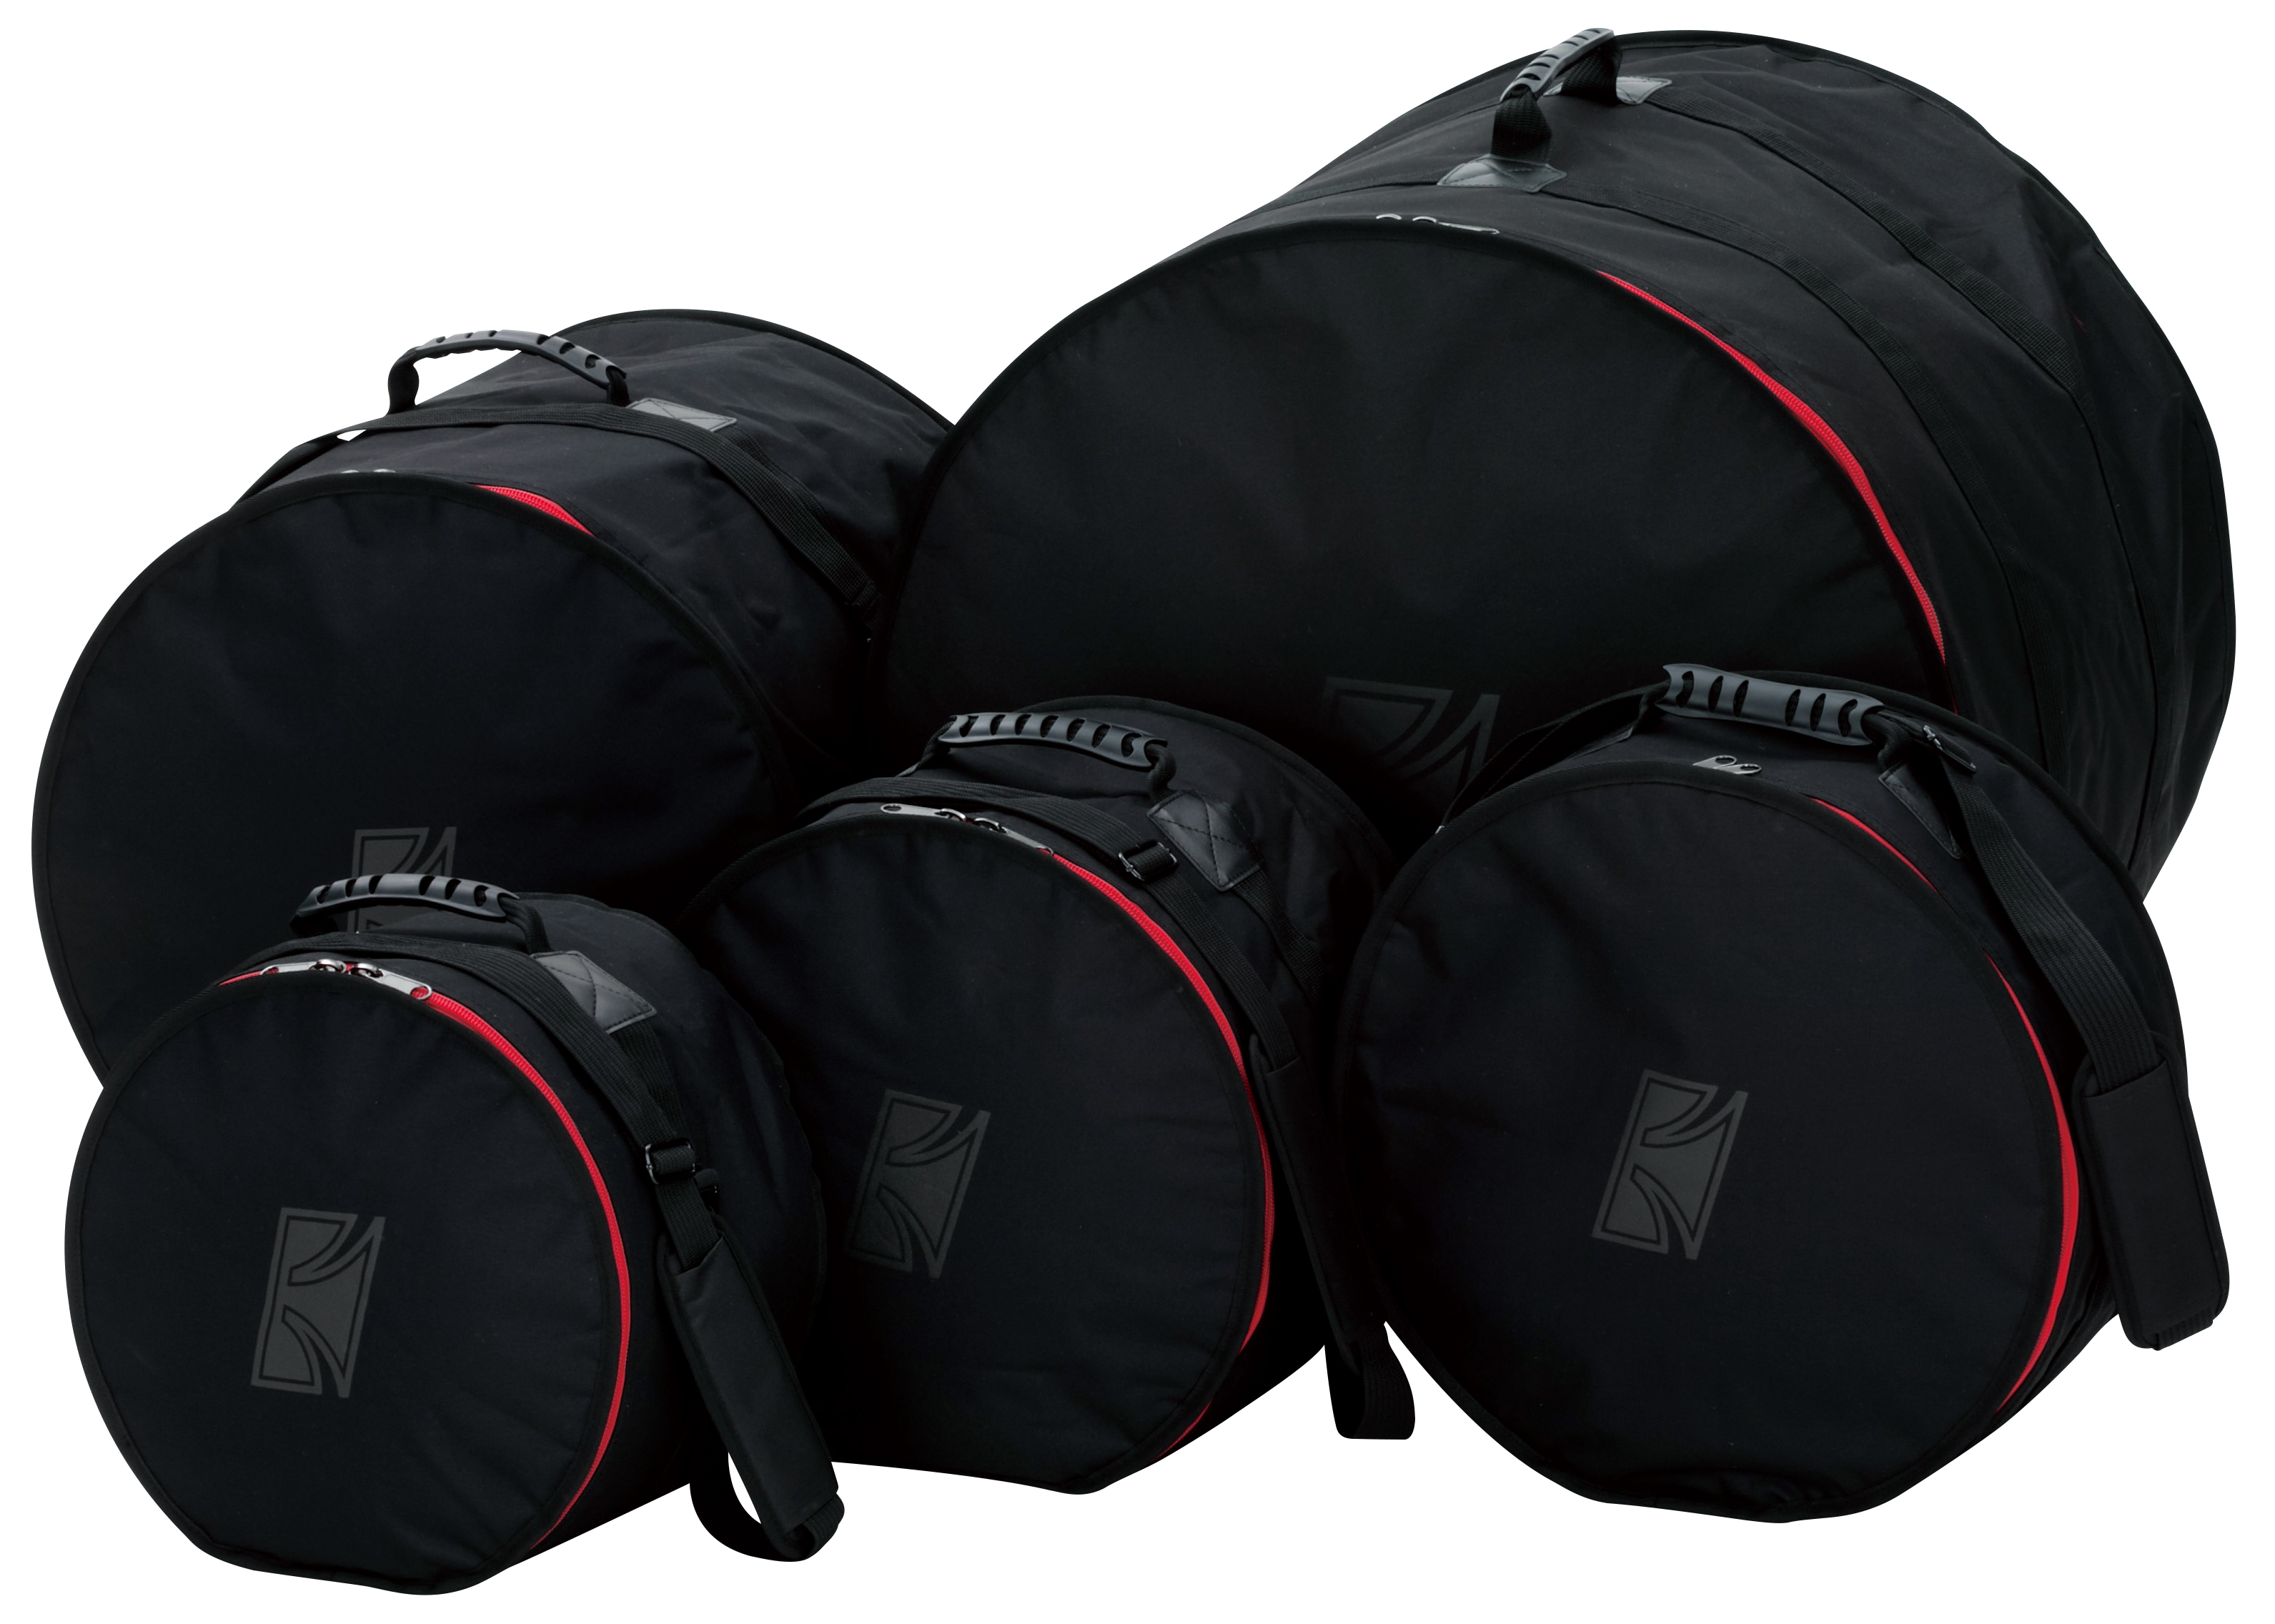 DSS52K Standard Drum Bag Set - Rock Konfiguration